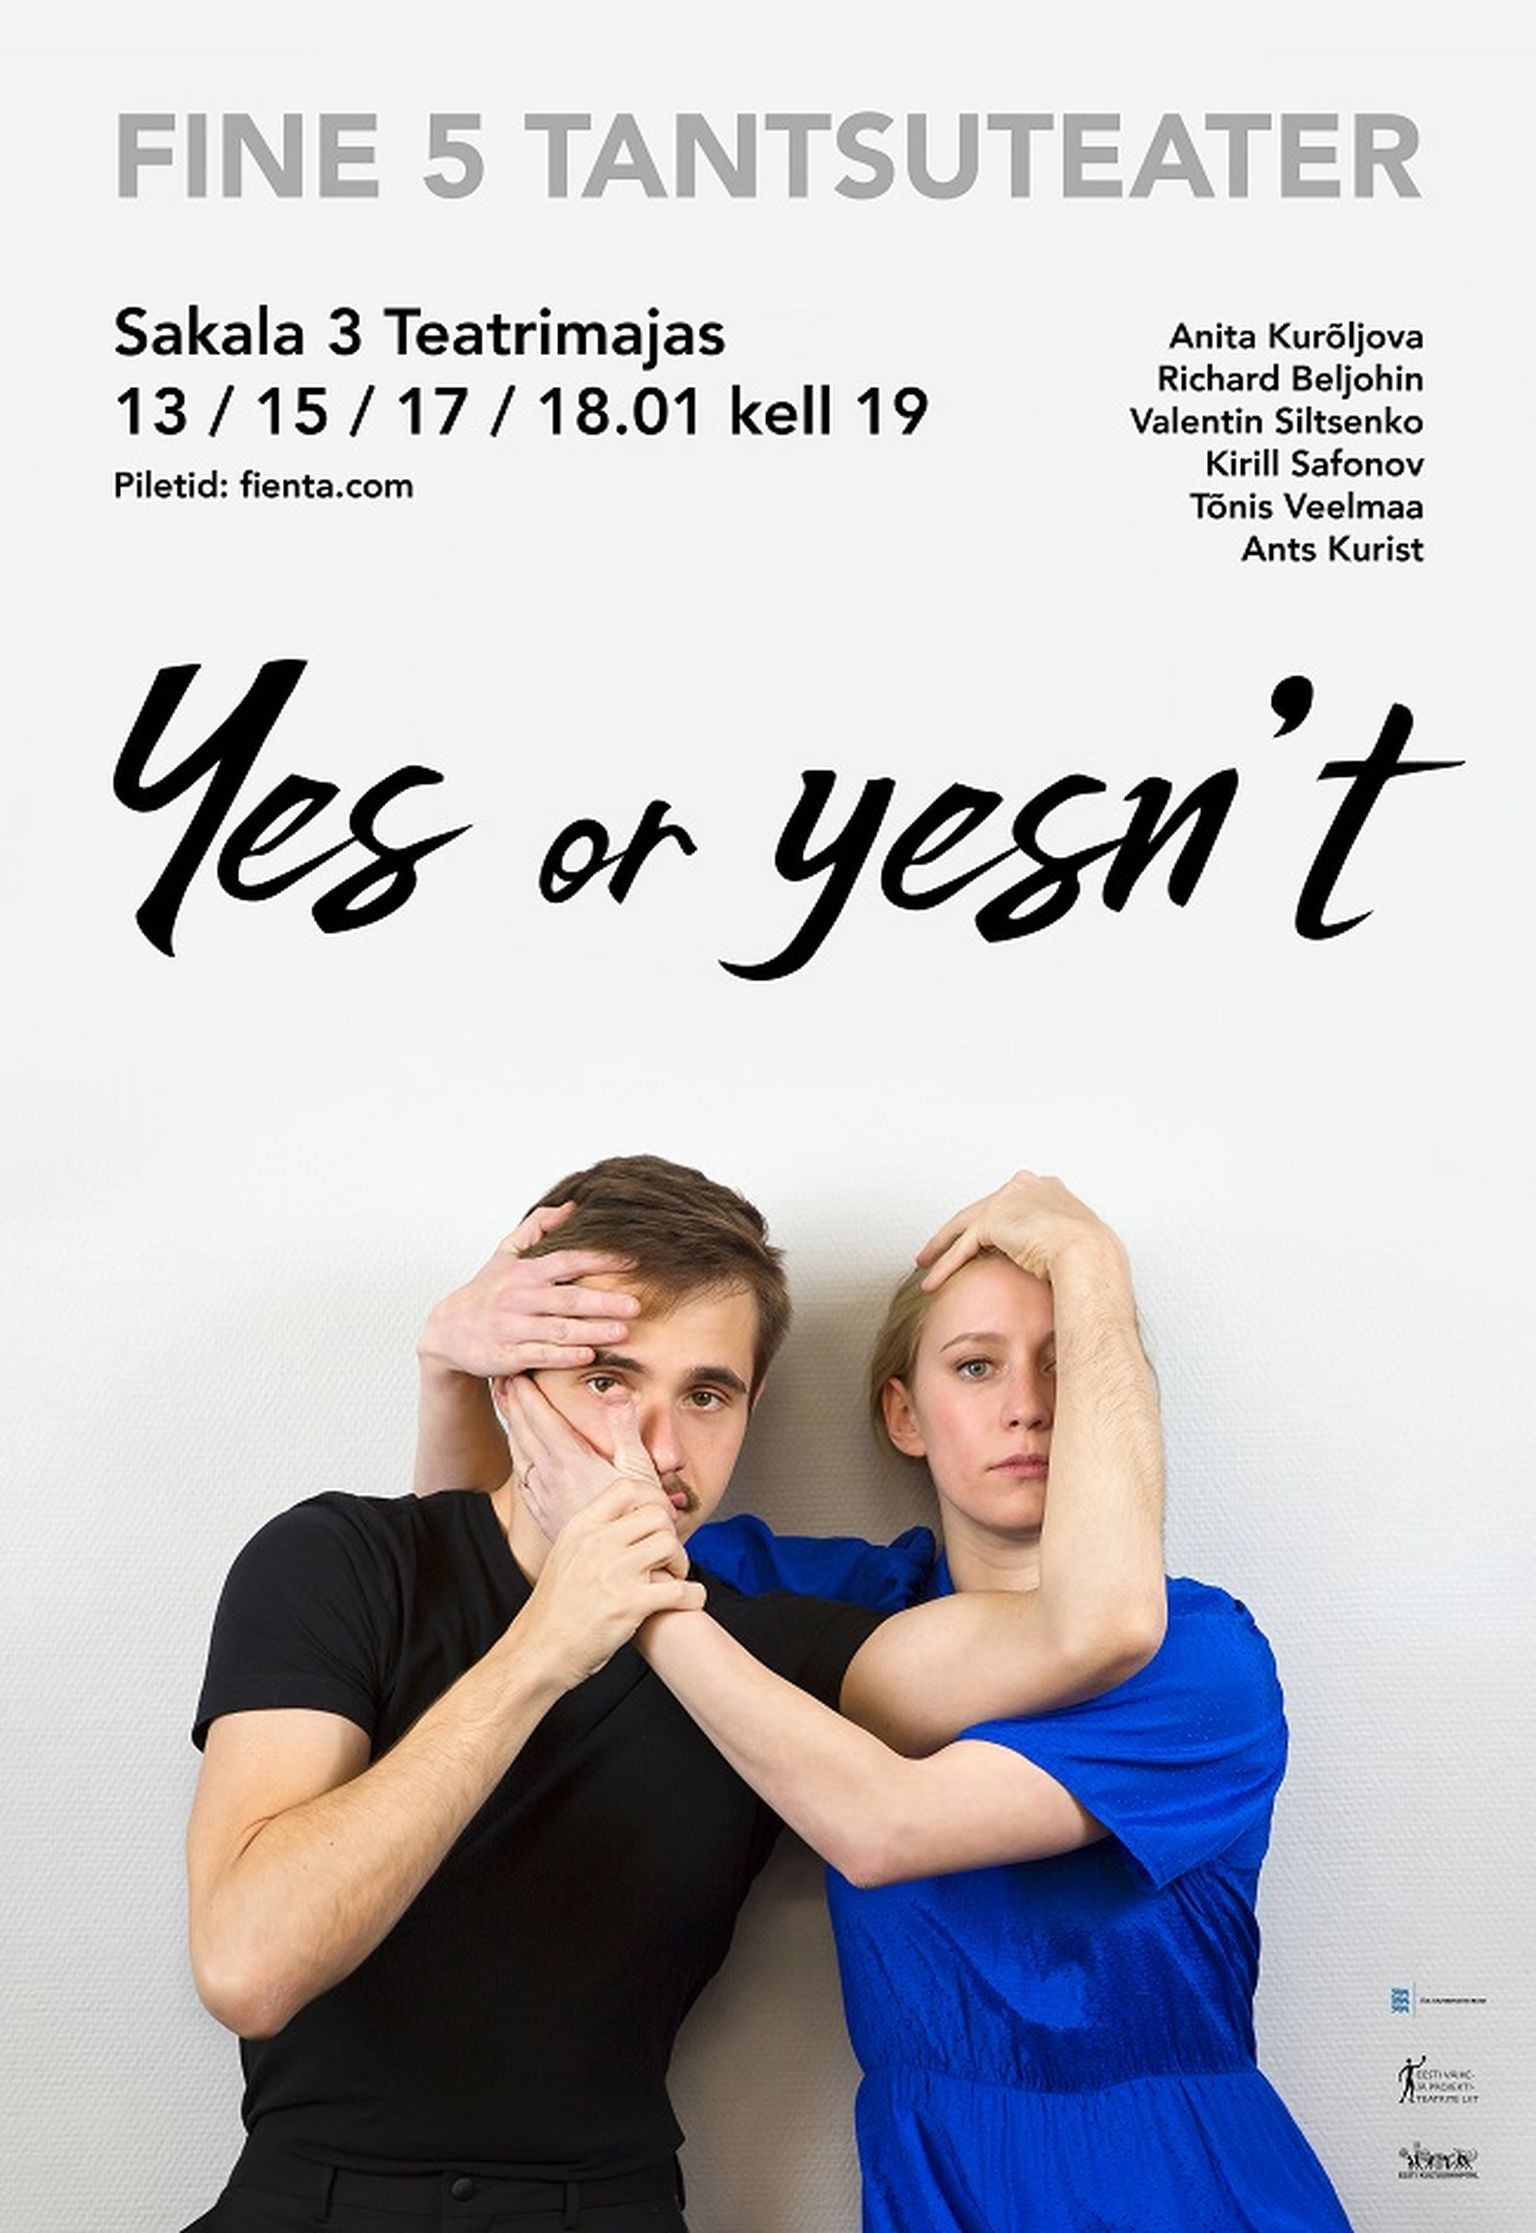 Anita Kurõljova ja Richard Beljohini debüütlavastus «Yes or Yesn’t».